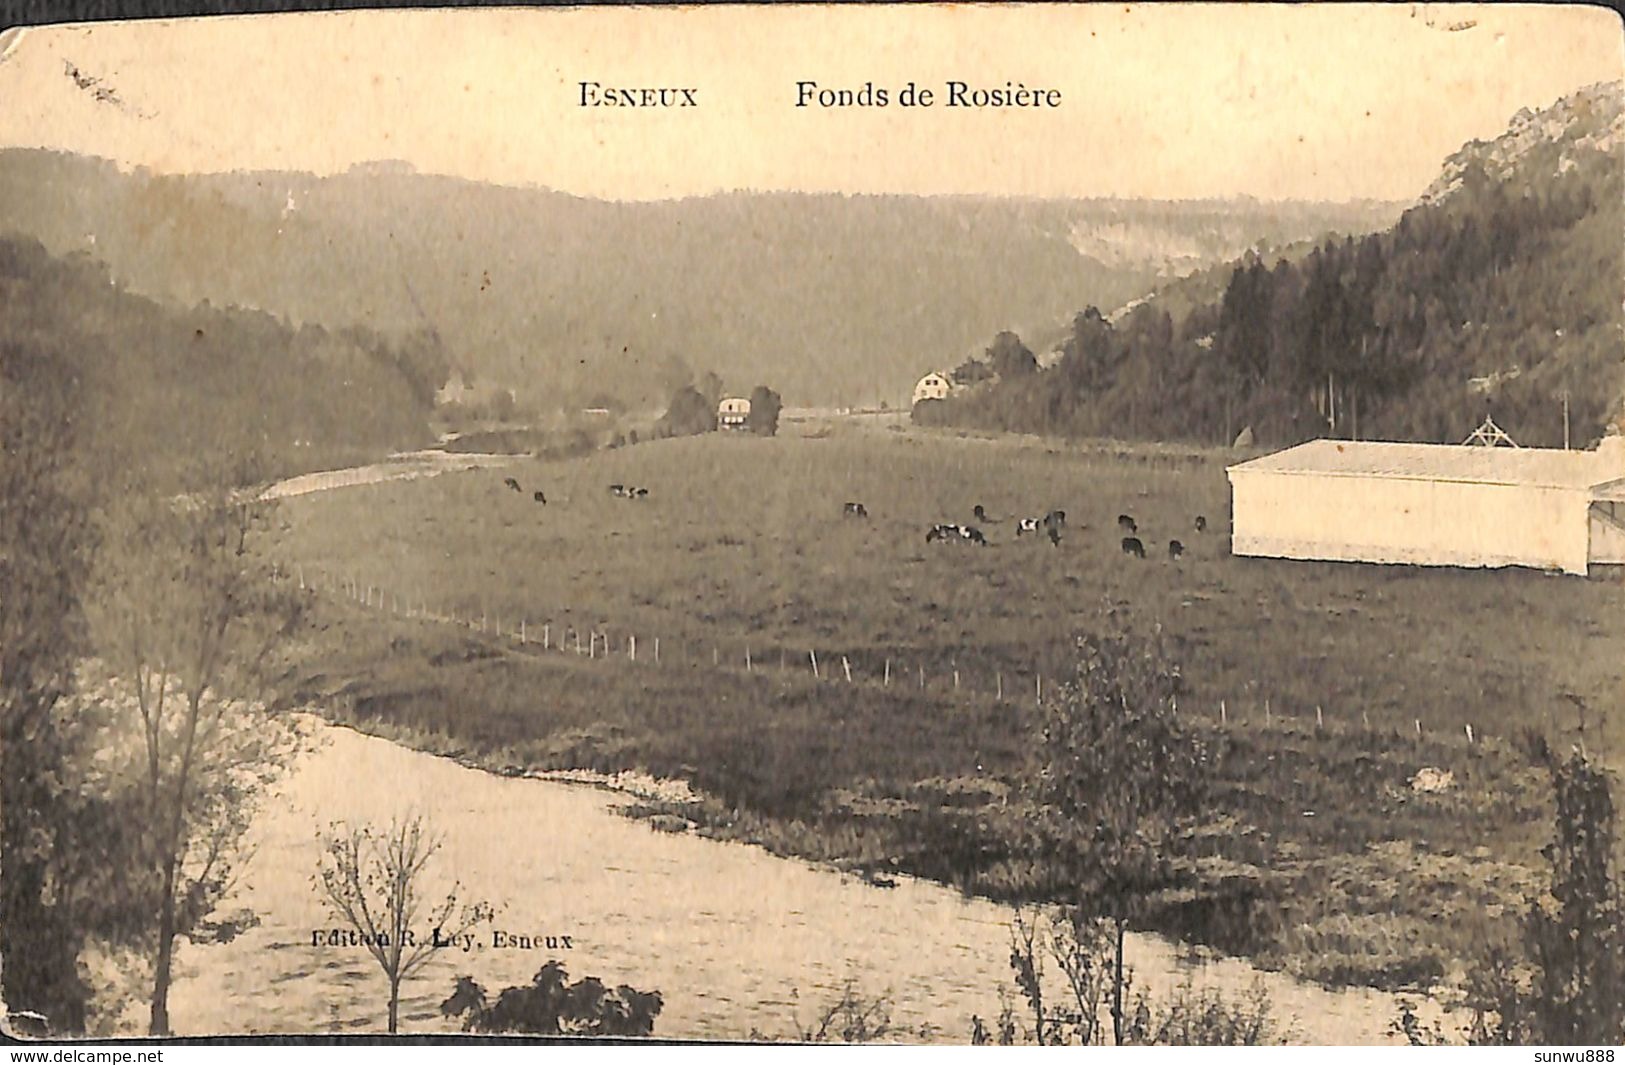 Esneux - Fonds De Rosière (Edition R. Ley, Vaches, Tente, Chapiteau) - Esneux